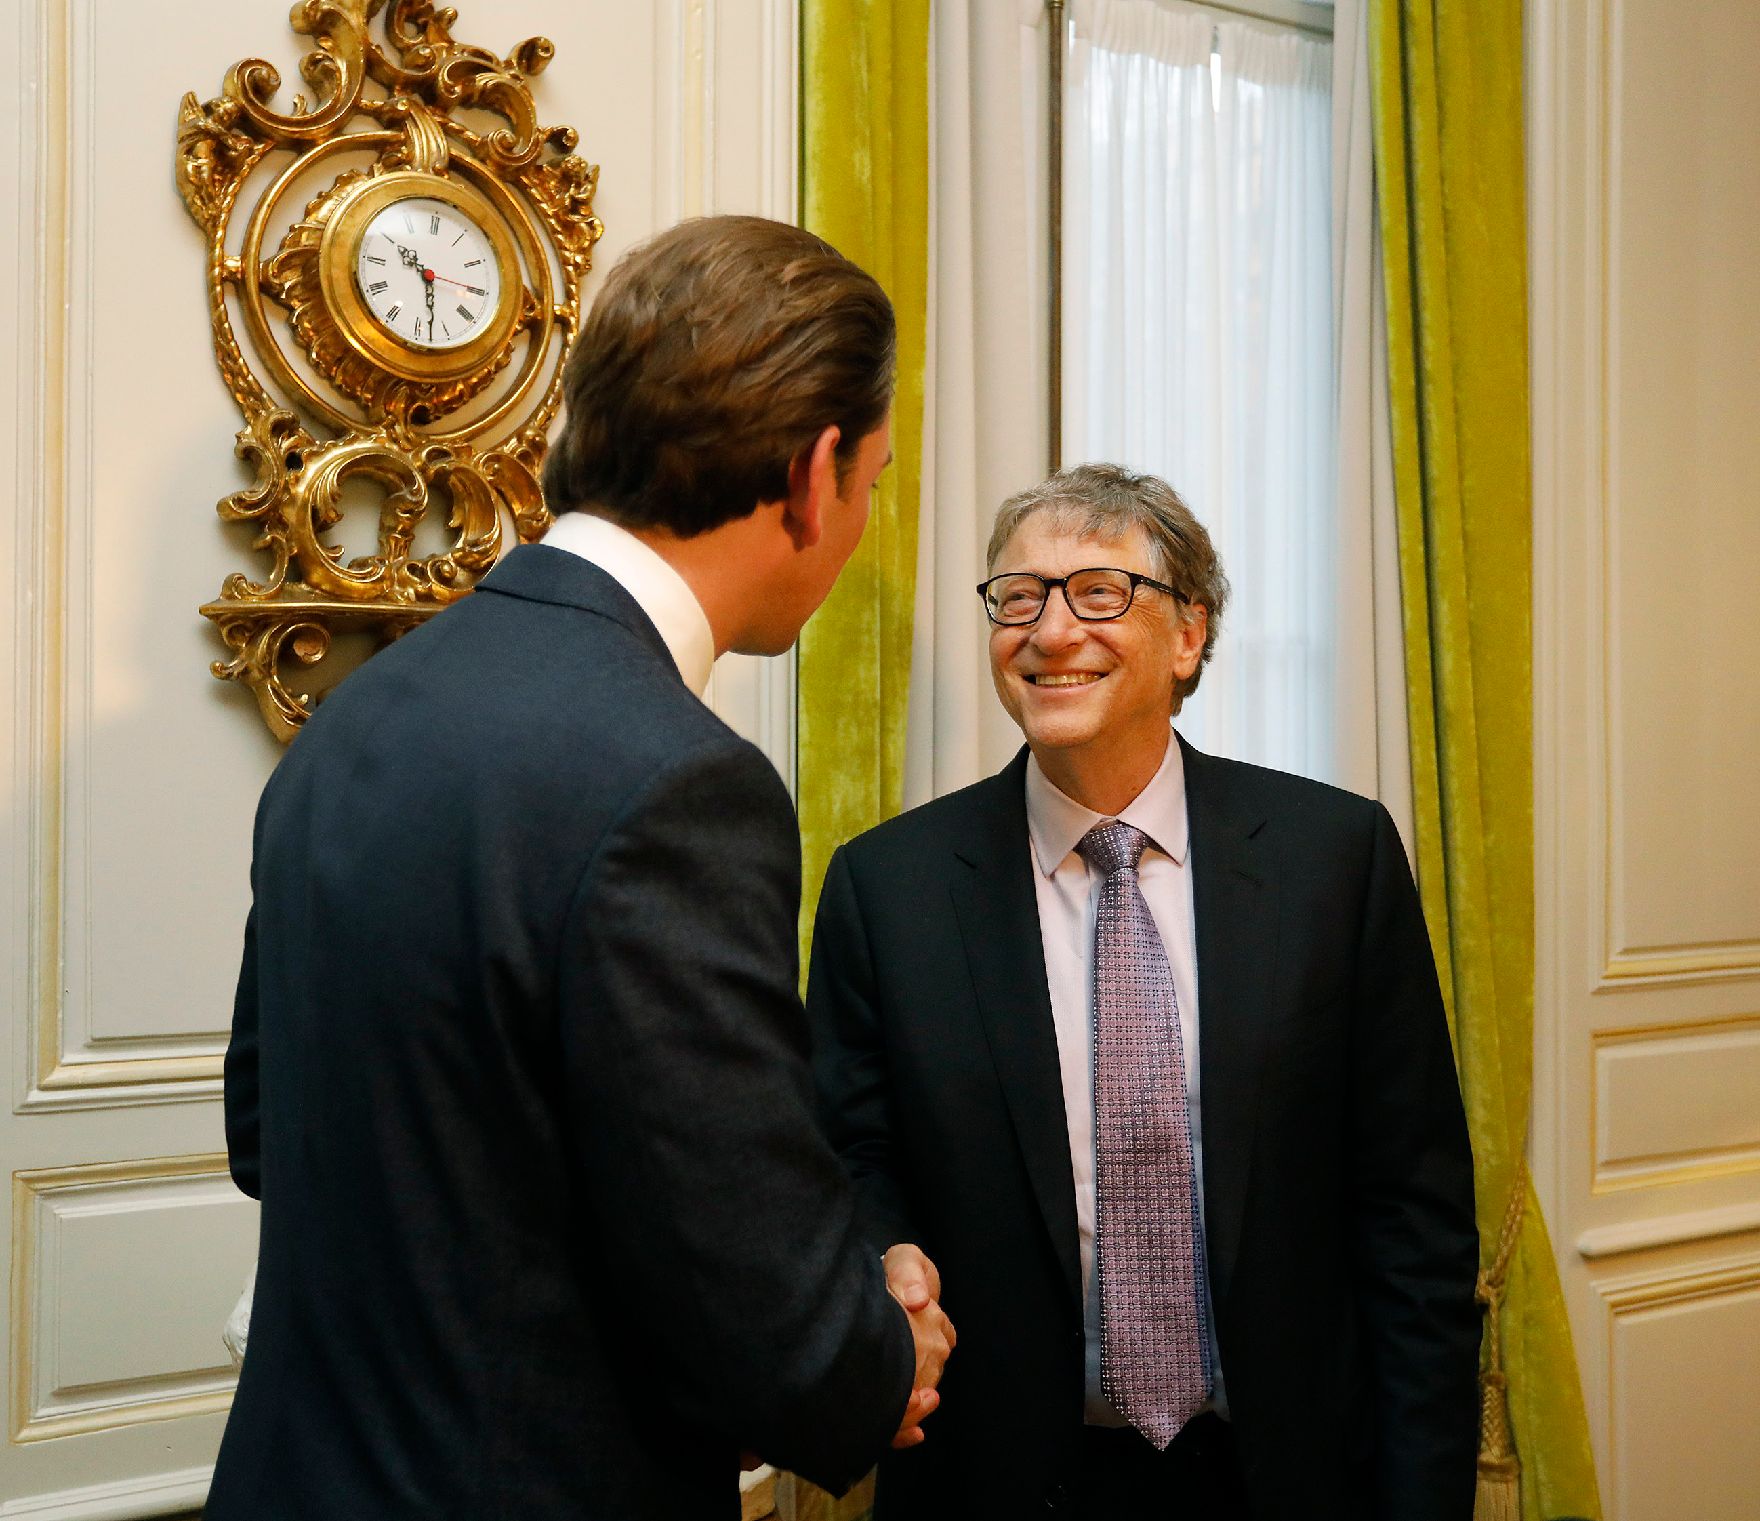 Am 17. Oktober 2018 traf Bundeskanzler Sebastian Kurz (l.) bei seinem Arbeitsbesuch in Brüssel den Microsoft-Gründer Bill Gates (r.) zu einem Gespräch.